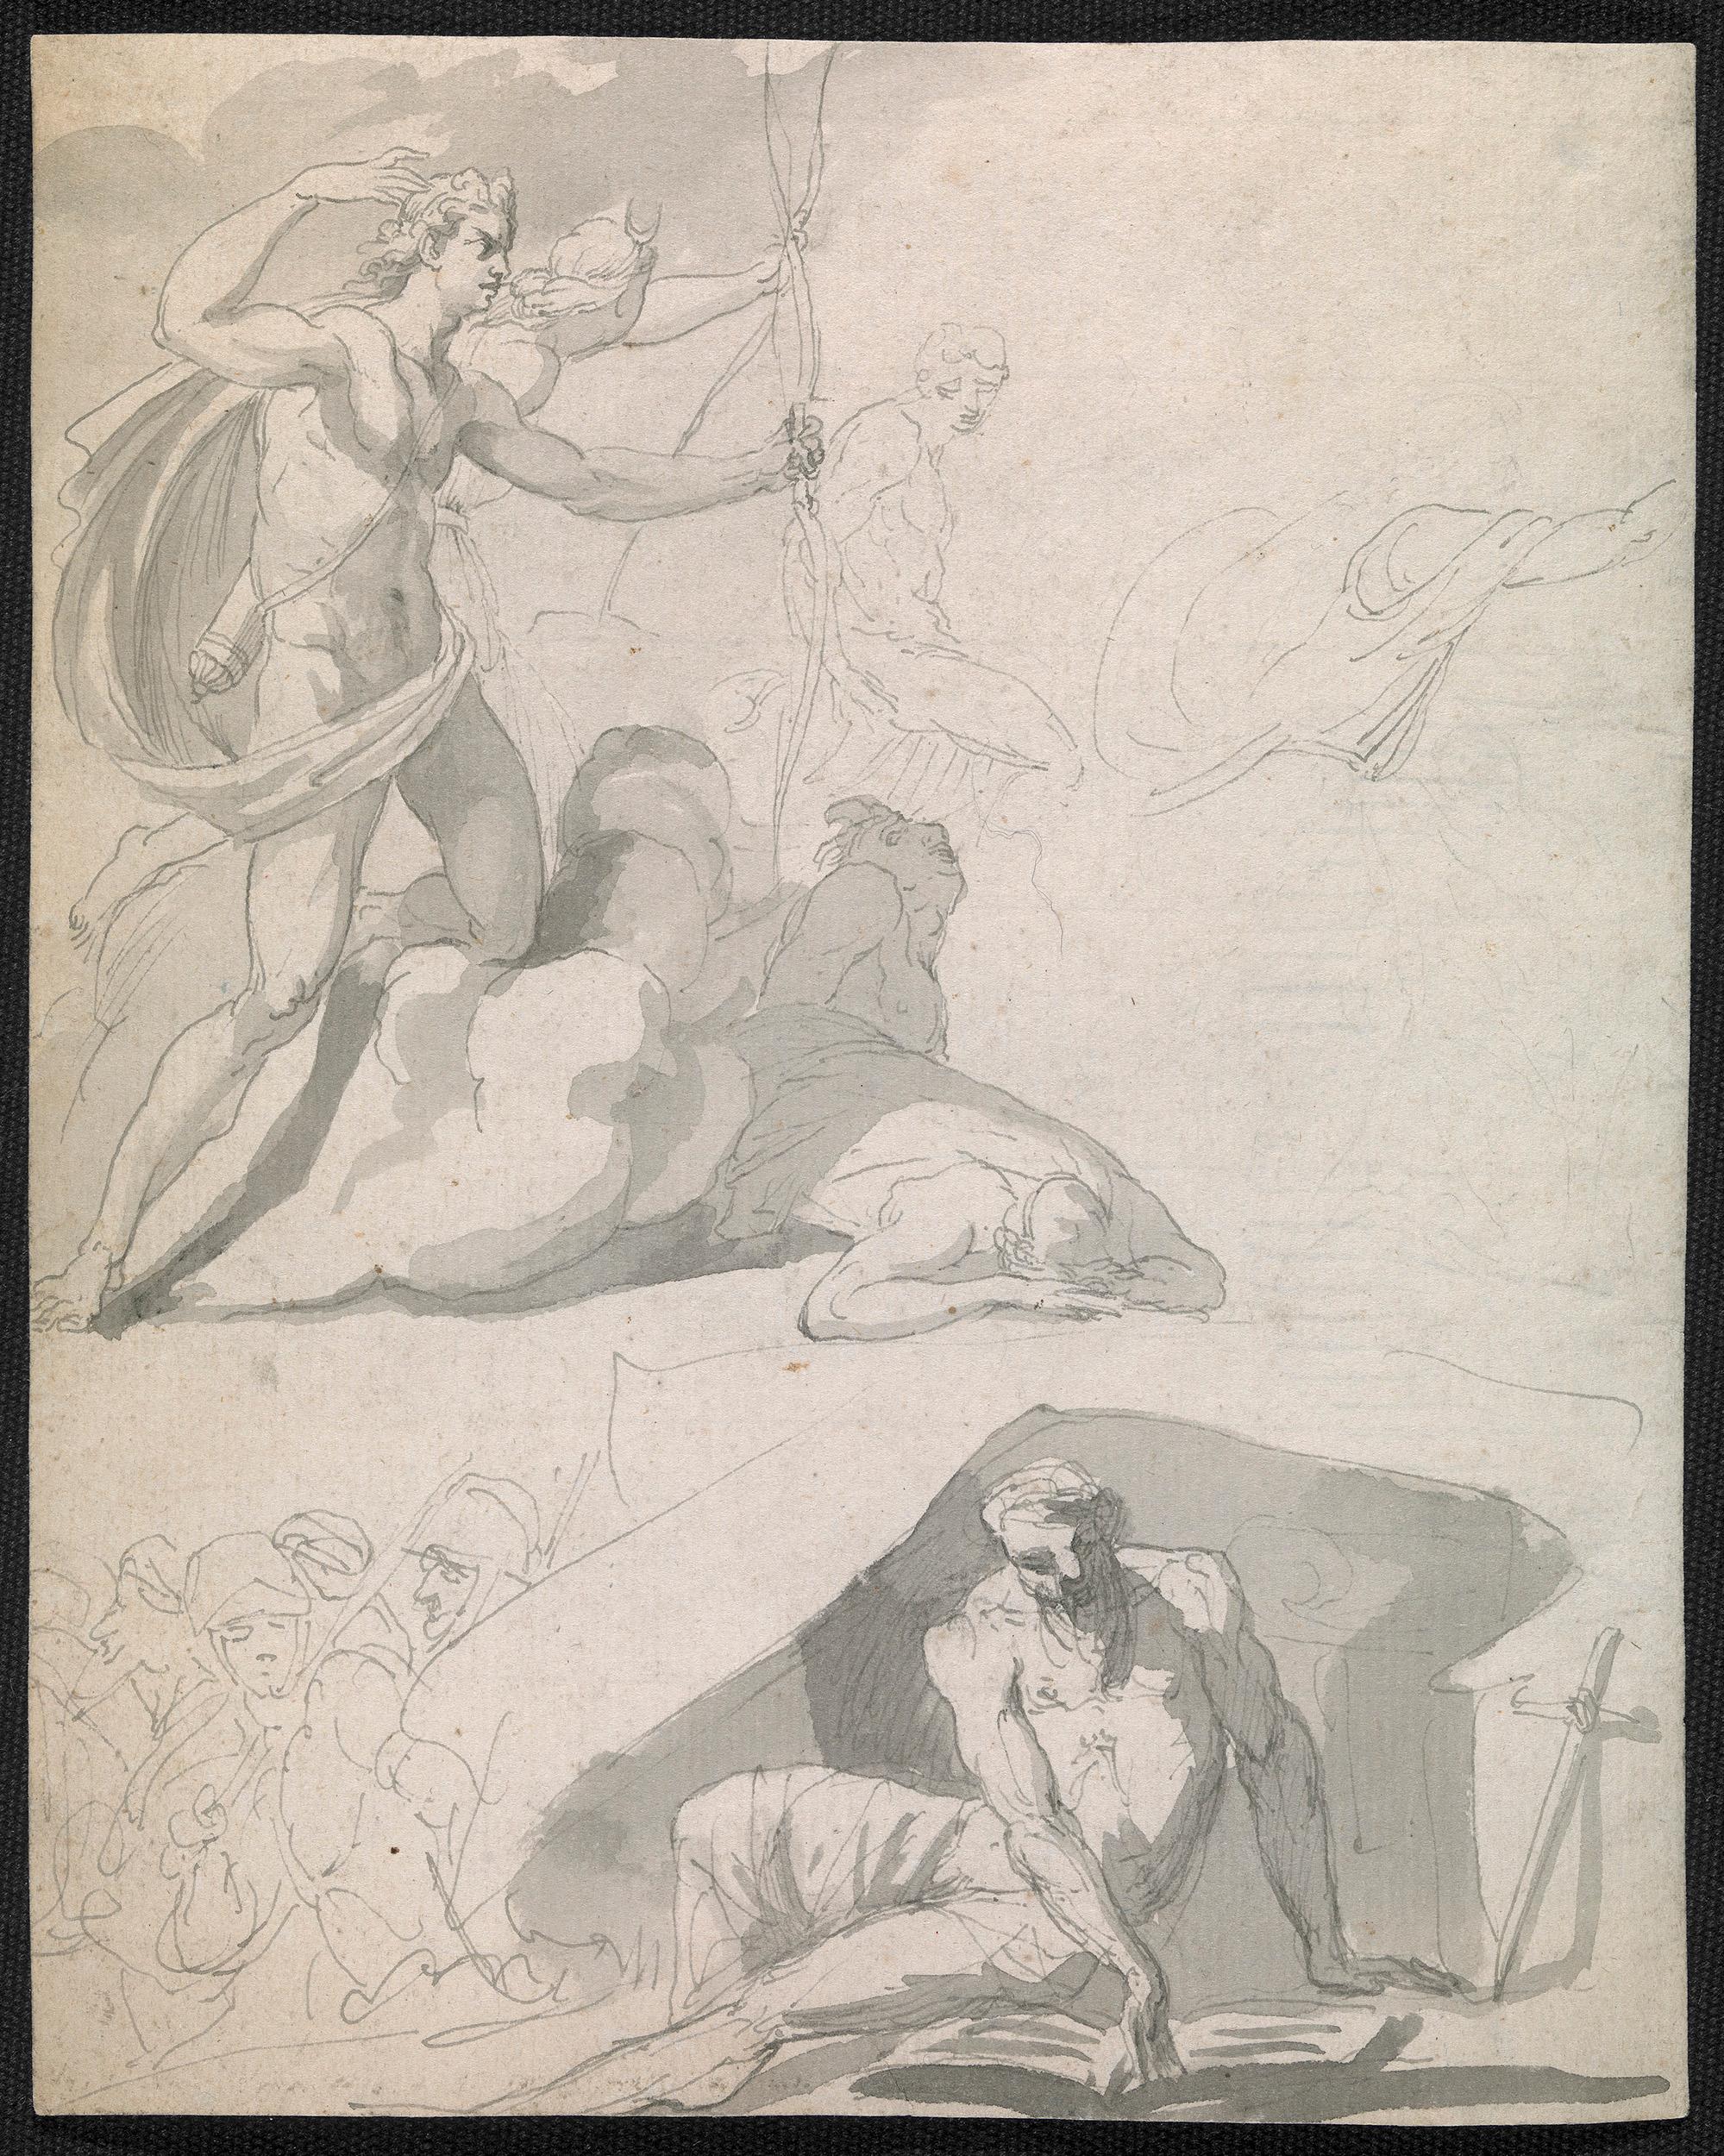 Le dessin du maître ancien du XVIIIe siècle - Apollon détruisant les enfants de Niobé